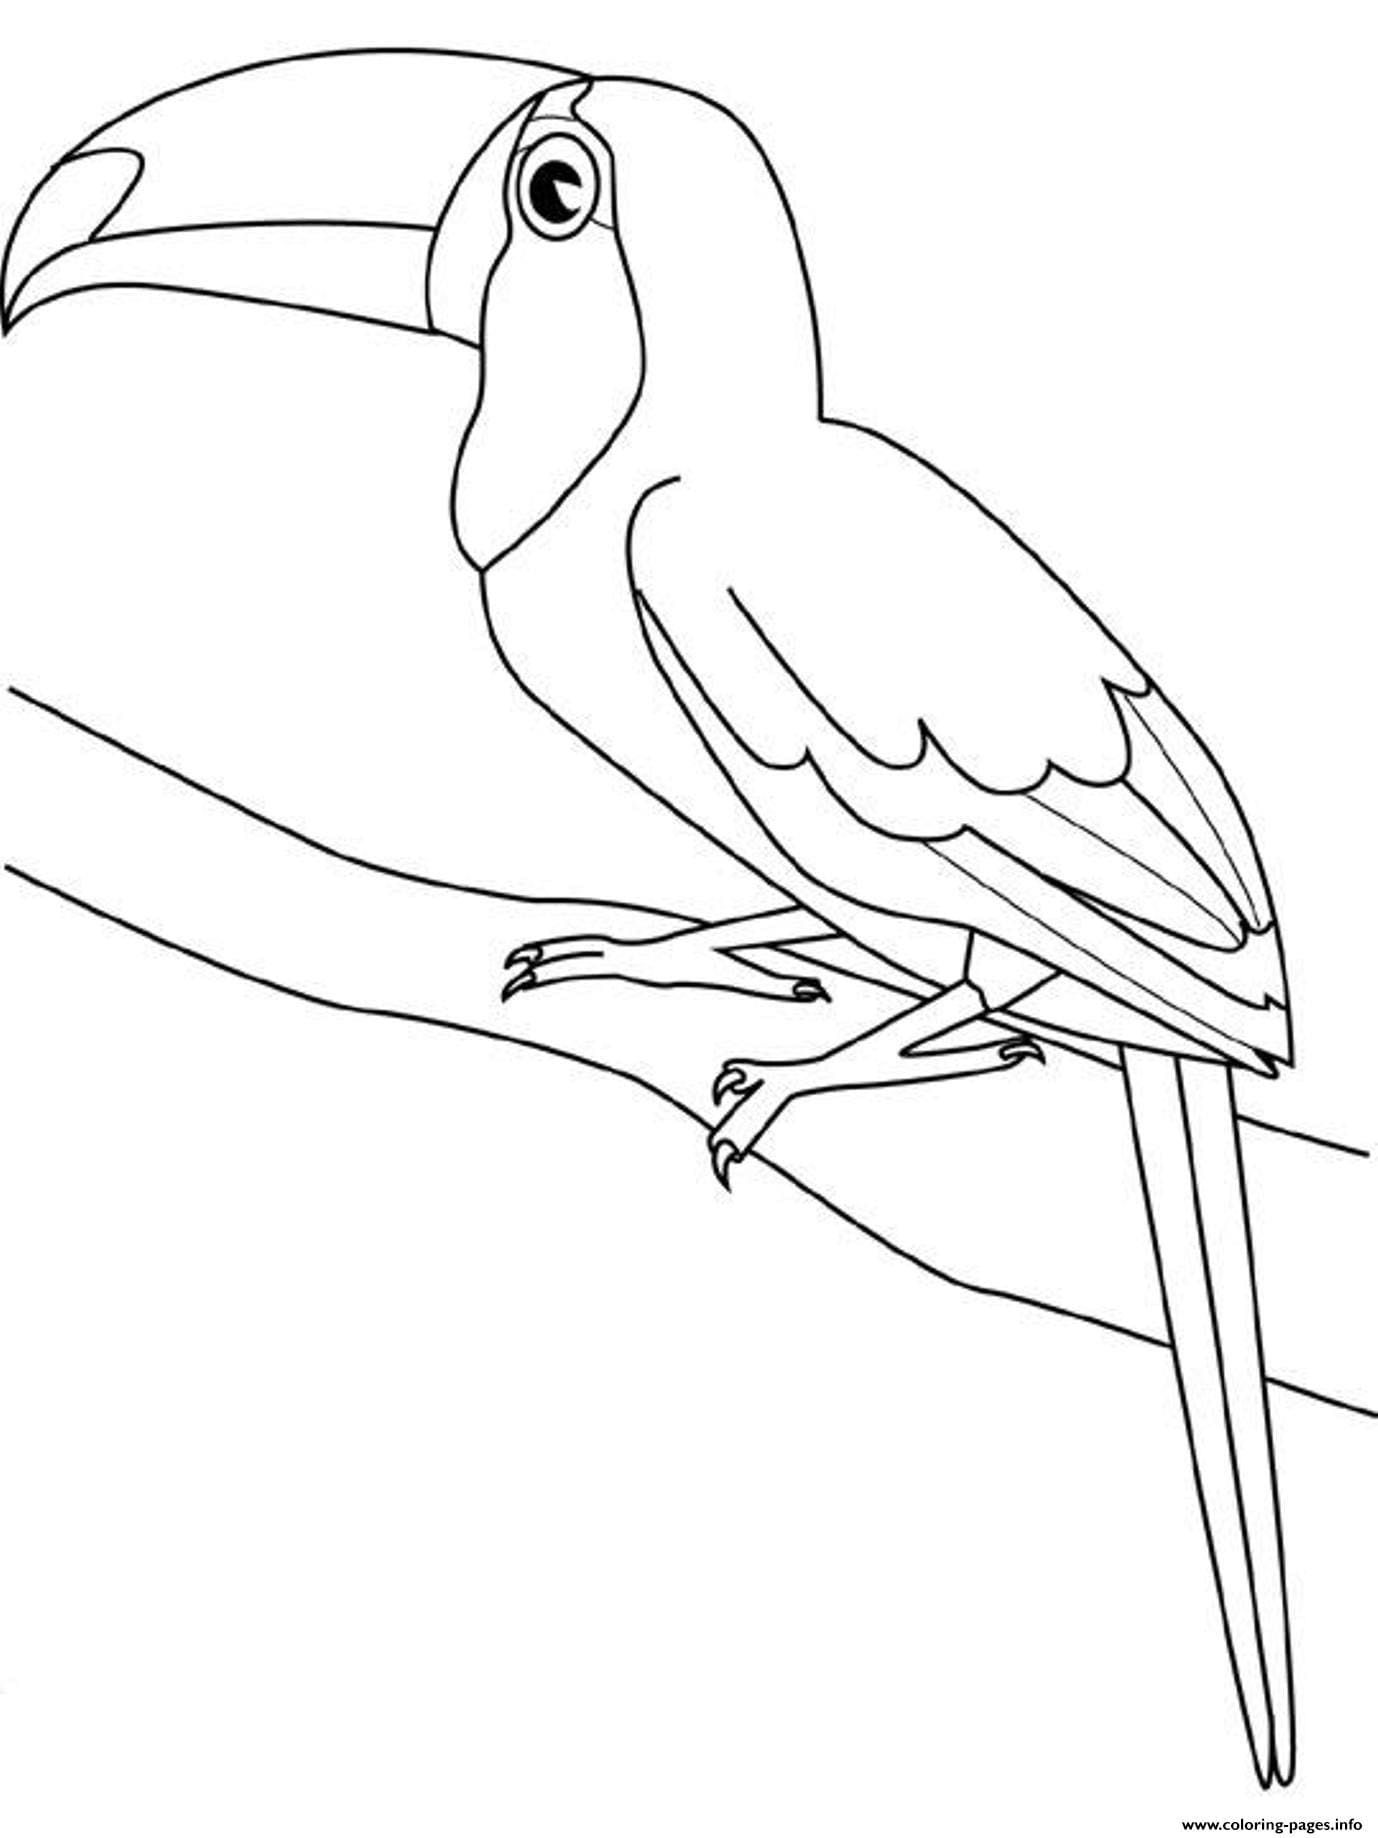 Desenhos de Imprimir imagem de tucano para colorir